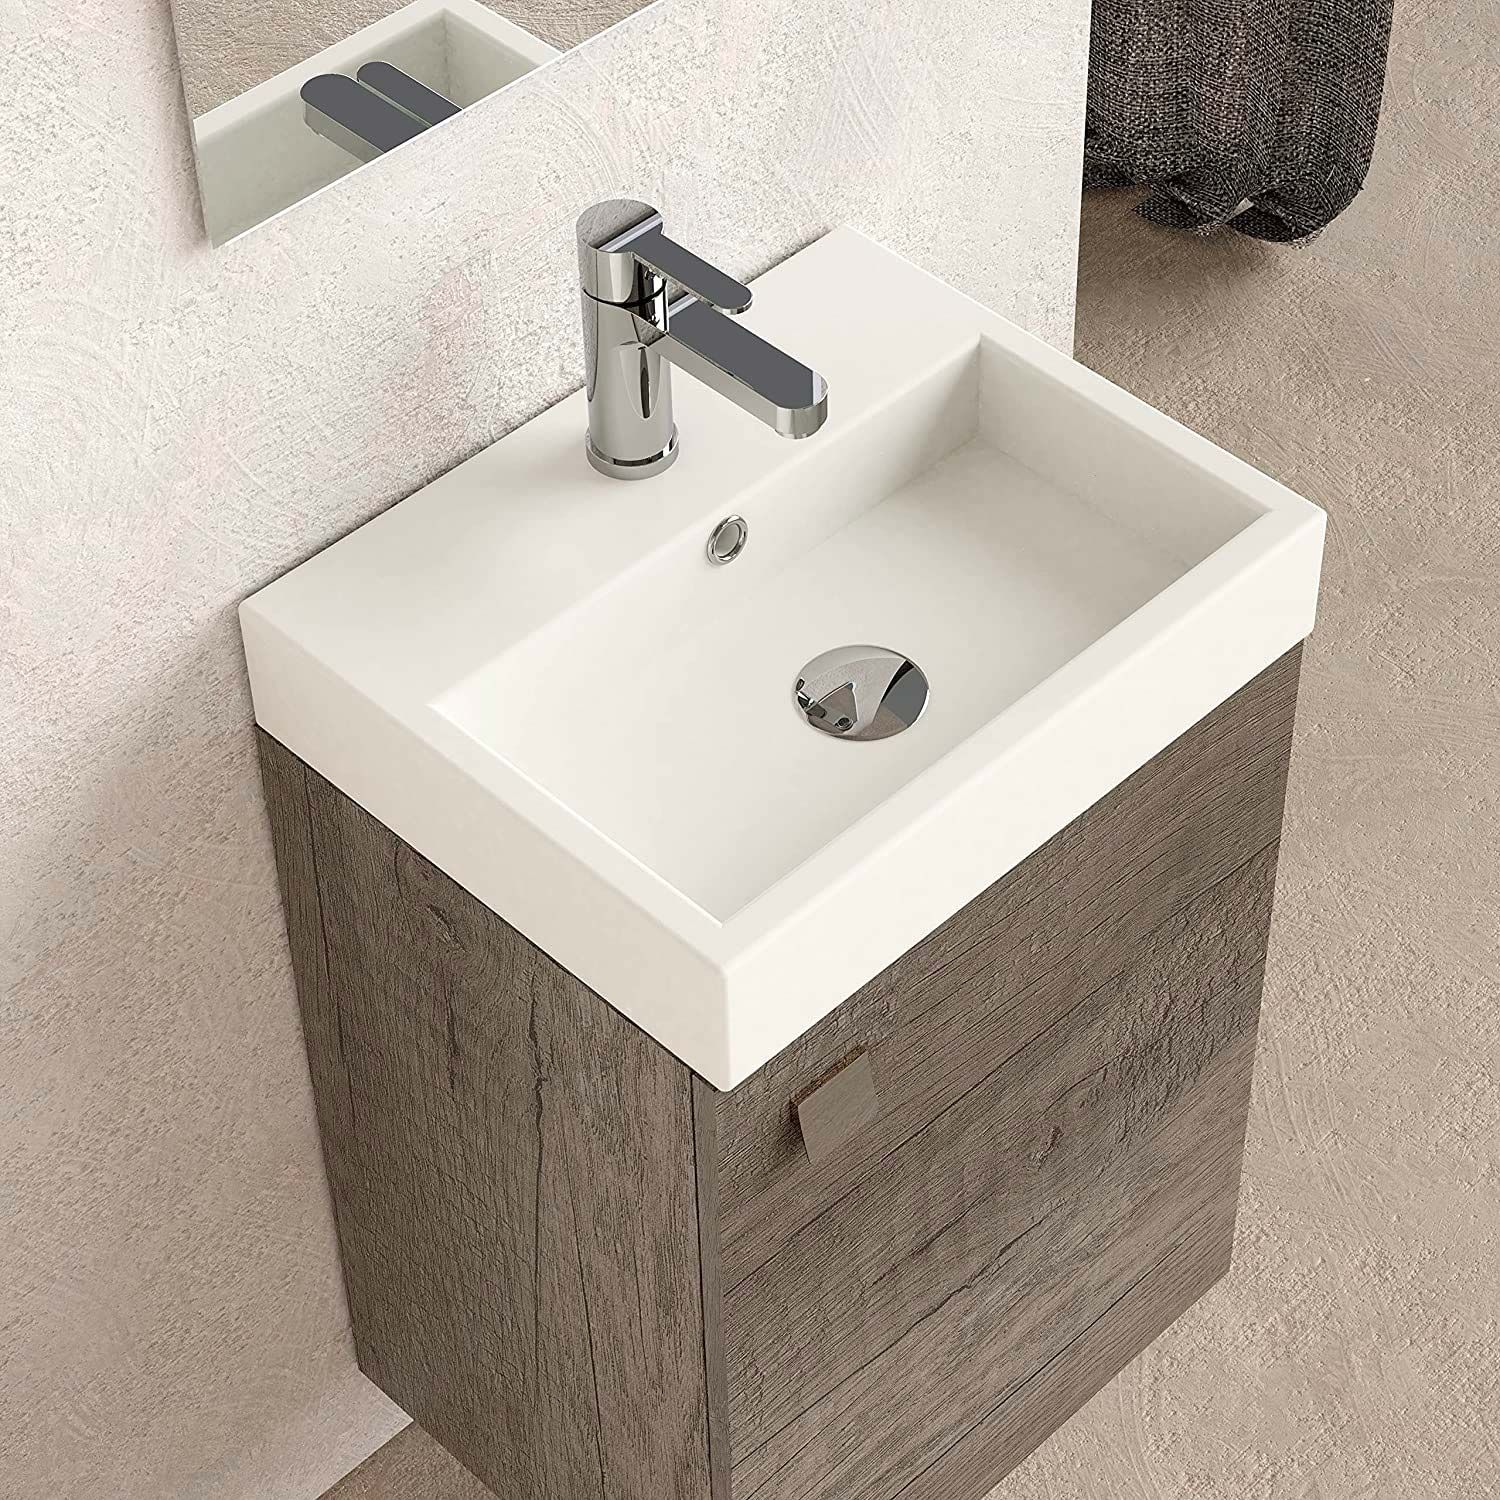 25 lavabos con mueble ideales para un baño pequeño